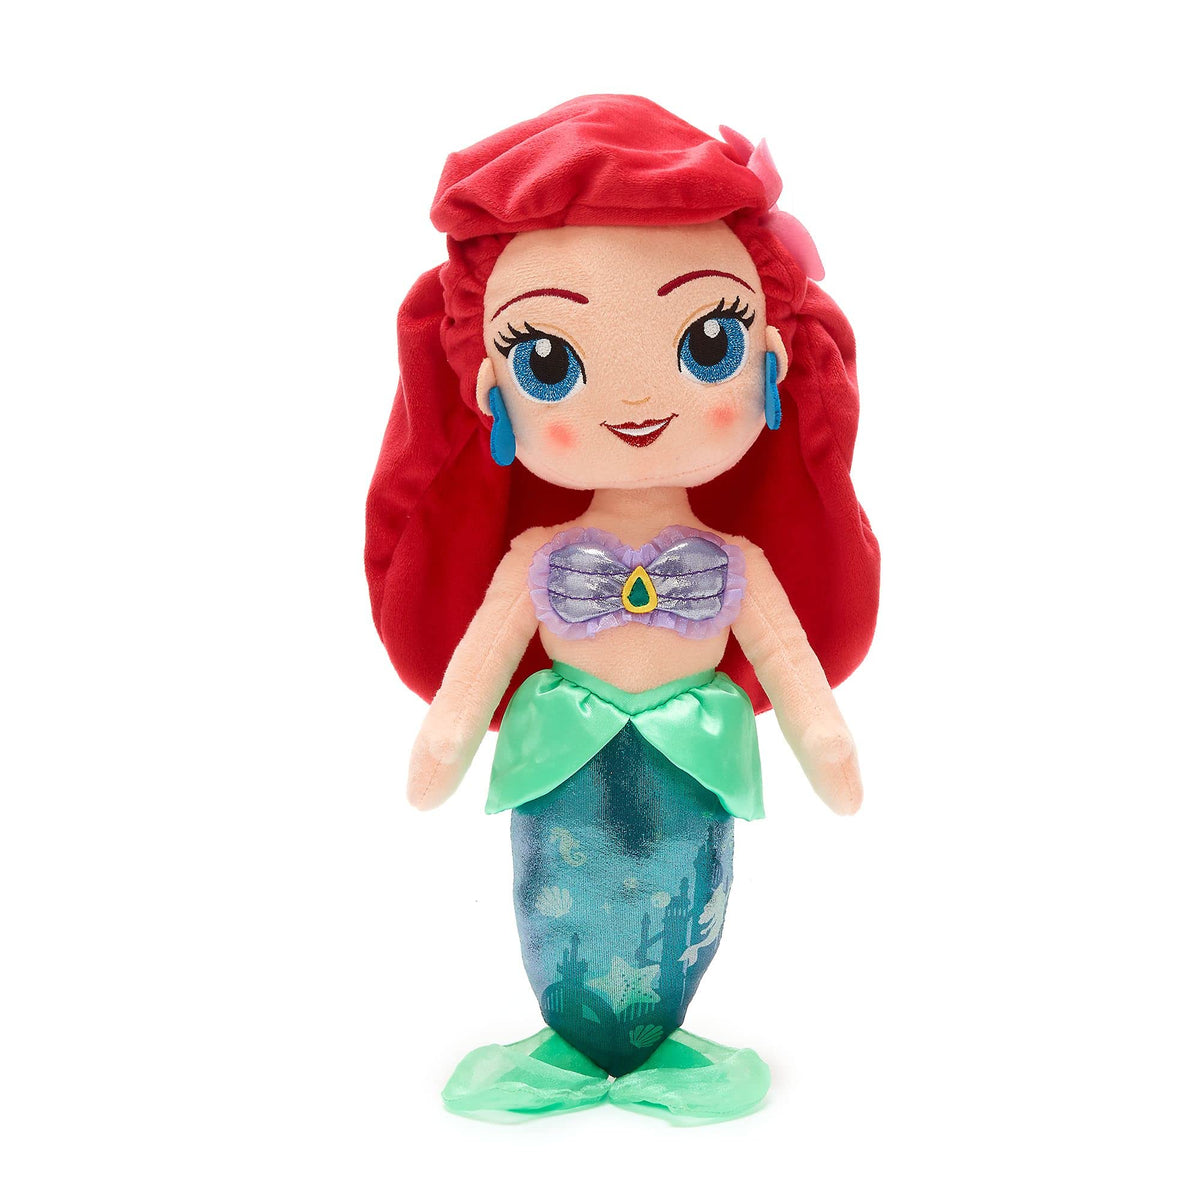 Disney Store Official Ariel Soft Toy Doll, The Little Mermaid, 37cm/14ÃƒÆ’Ã‚Â¢ÃƒÂ¢Ã¢â‚¬Å¡Ã‚Â¬Ãƒâ€šÃ‚Â, Plush Cuddly Classic Princess Character for Kids, Underwater Princess with Embroidered Expression and Shimmery Tail